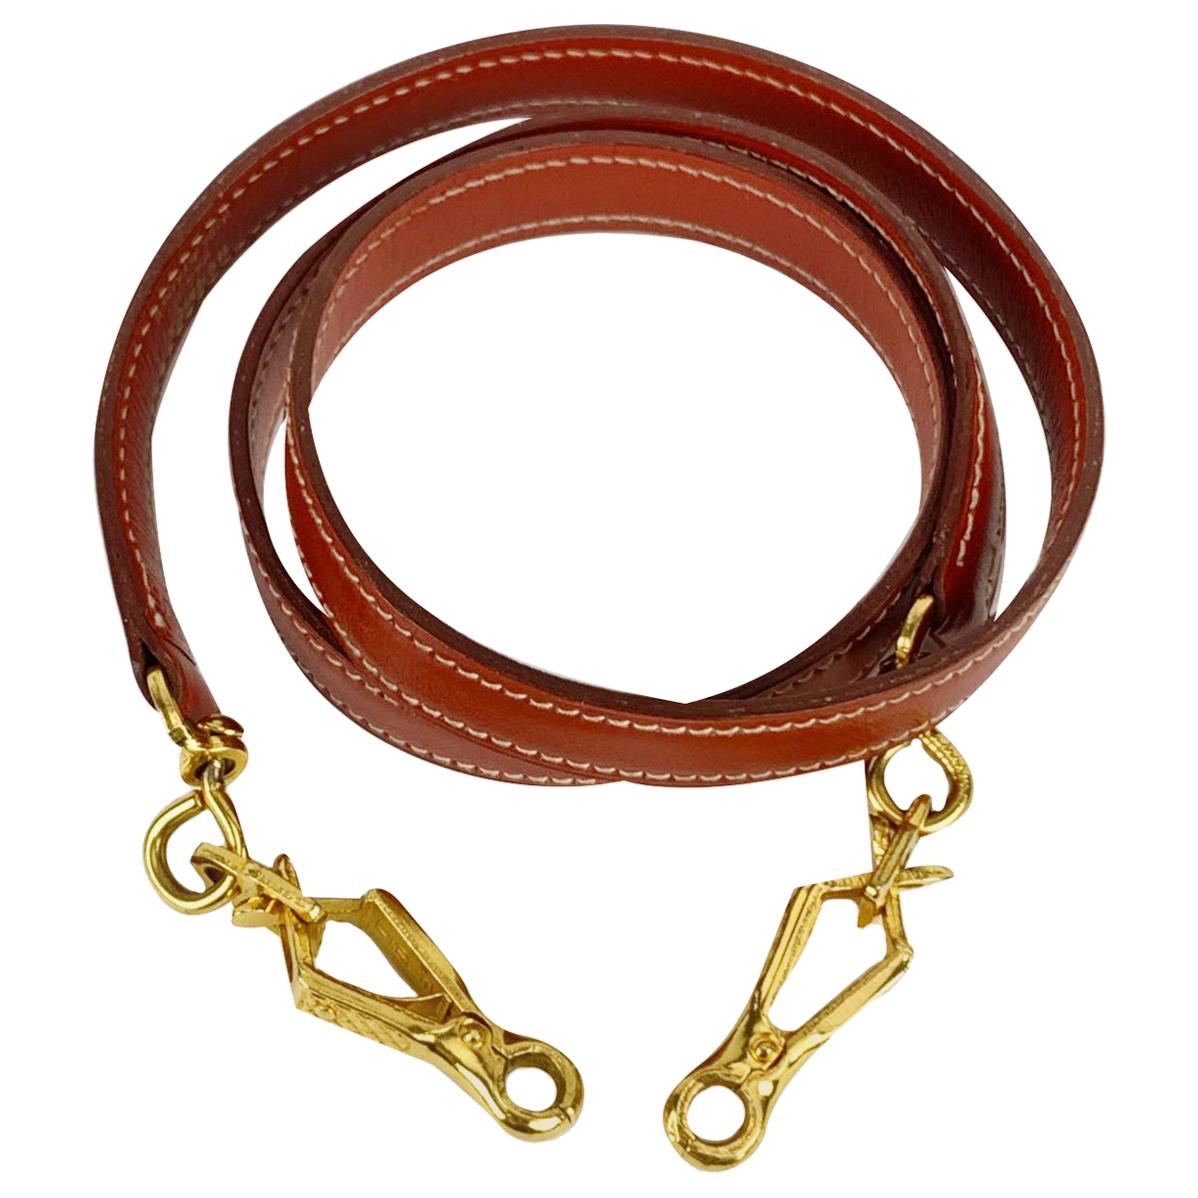 Hermes Vintage Brown Smooth Leather Shoulder Strap for Kelly Bag